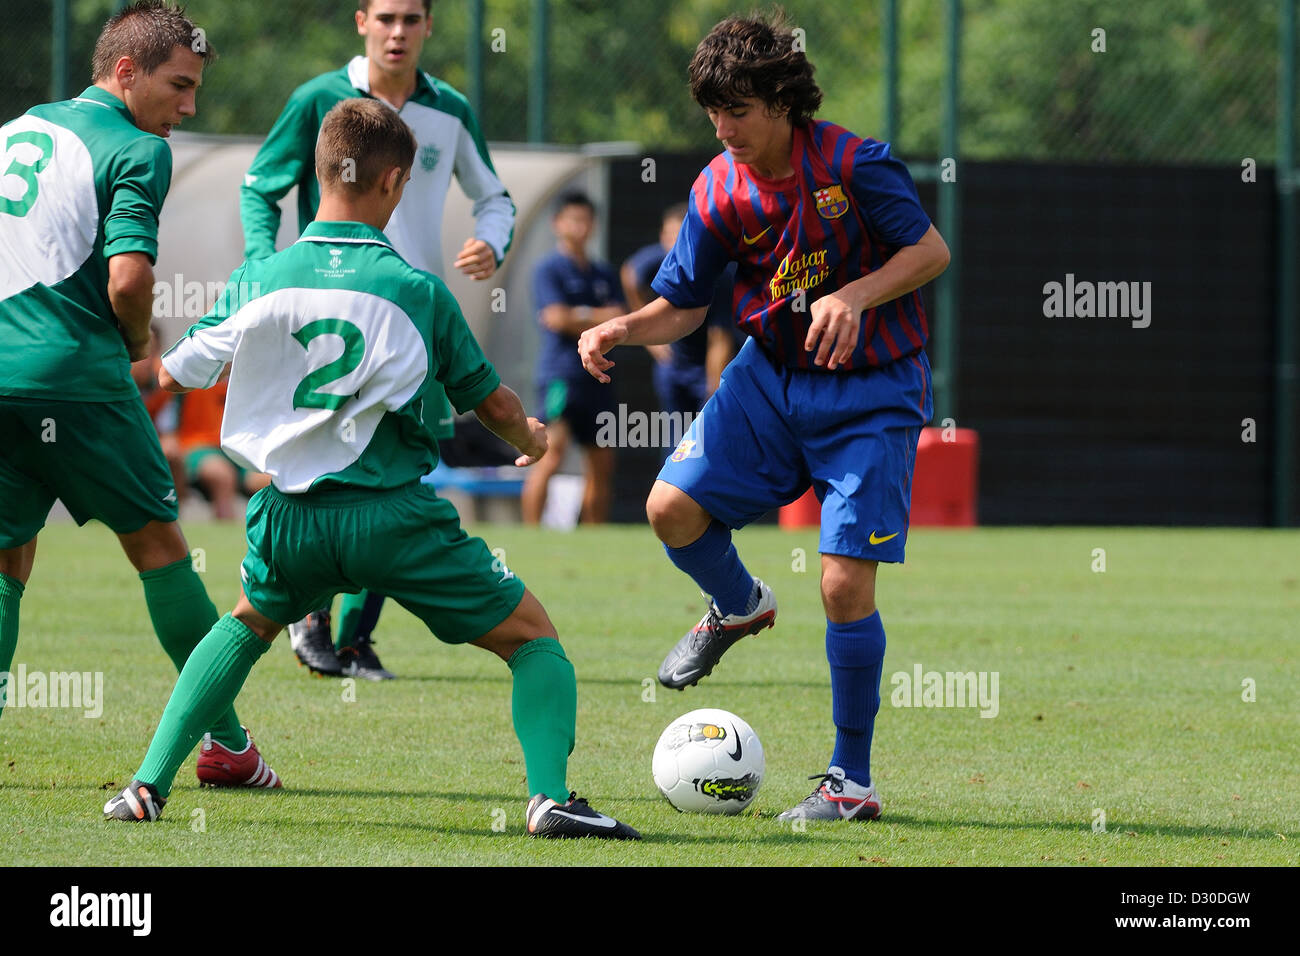 Barcelone, Espagne - SEP 4 : Joel Huertas joue avec F.C Barcelone équipe de jeunes contre l'U.E. Cornella. Banque D'Images